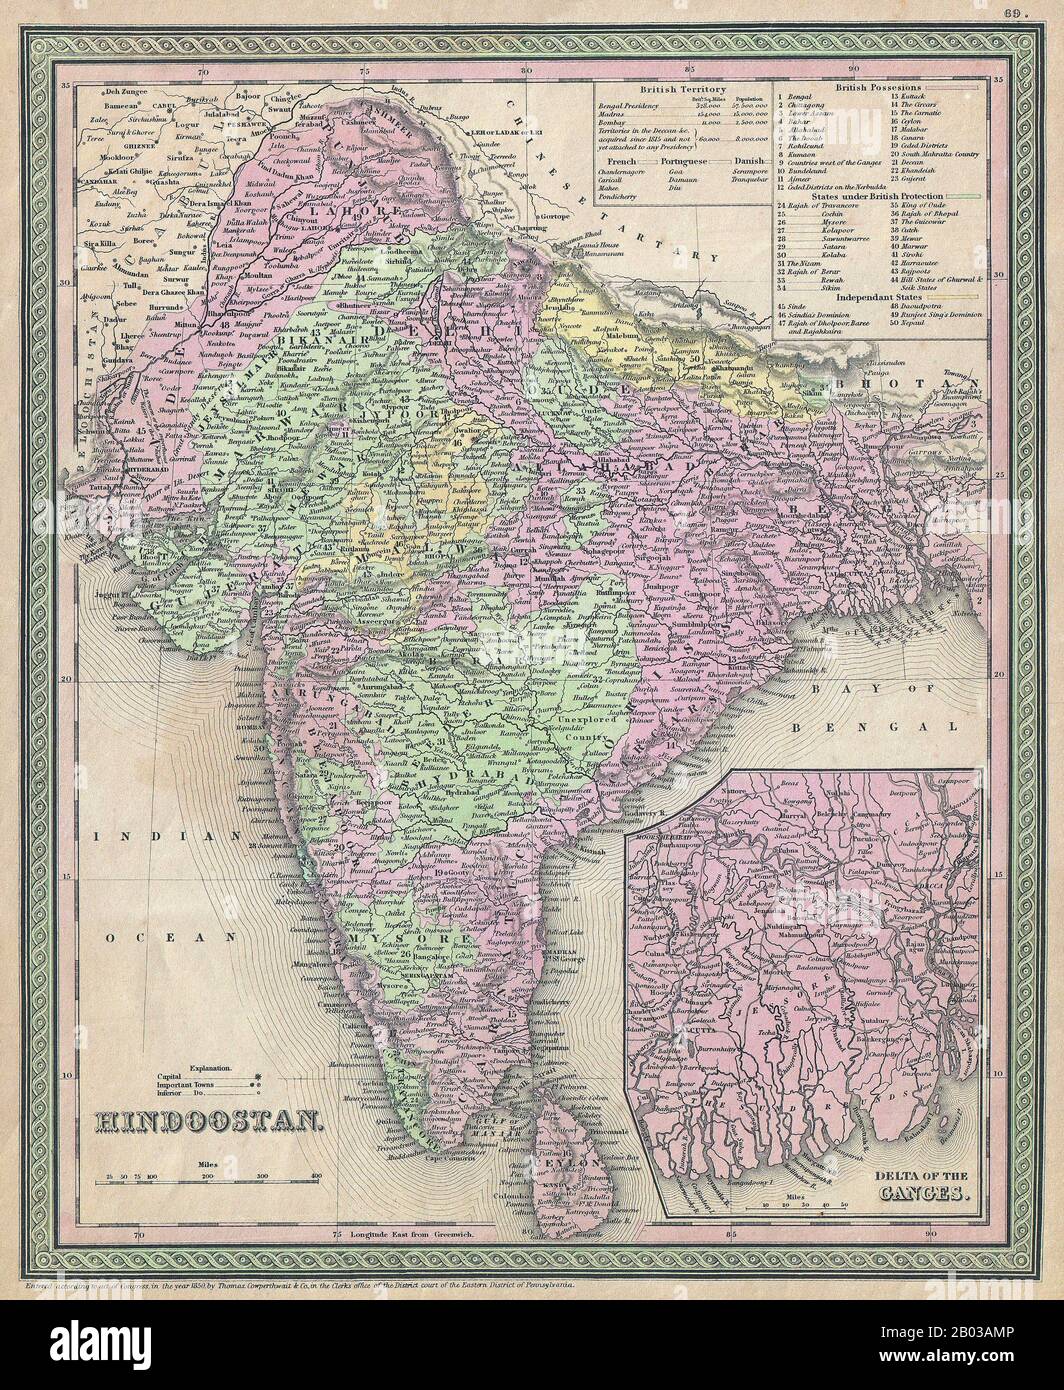 Indien: Amerikanische Karte des indischen Subkontinents, mit fürstlichen Staaten und britischen Besitzungen farbcodiert, sowie einem unteren rechten Einsatz, der das Ganges-Flussdelta beschreibt. Lithographie von Samuel Augustus Mitchell (1790-1868), 1850. Samuel Augustus Mitchell (1790-1868) war ein amerikanischer Geograph, der in Connecticut geboren wurde. Stockfoto